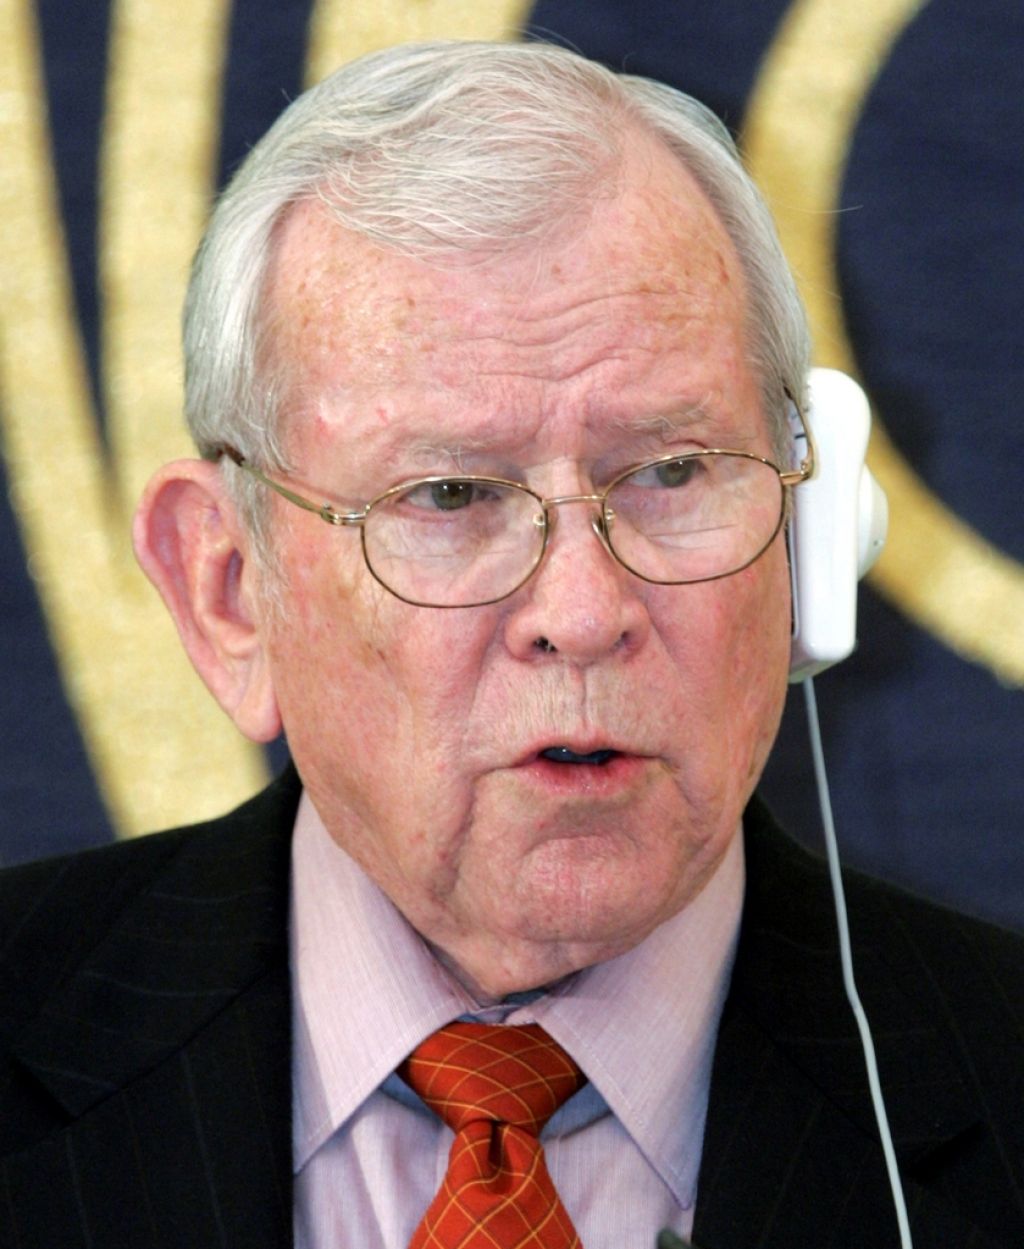 Umrl ameriški senator Baker, ena od ključnih osebnosti afere Watergate